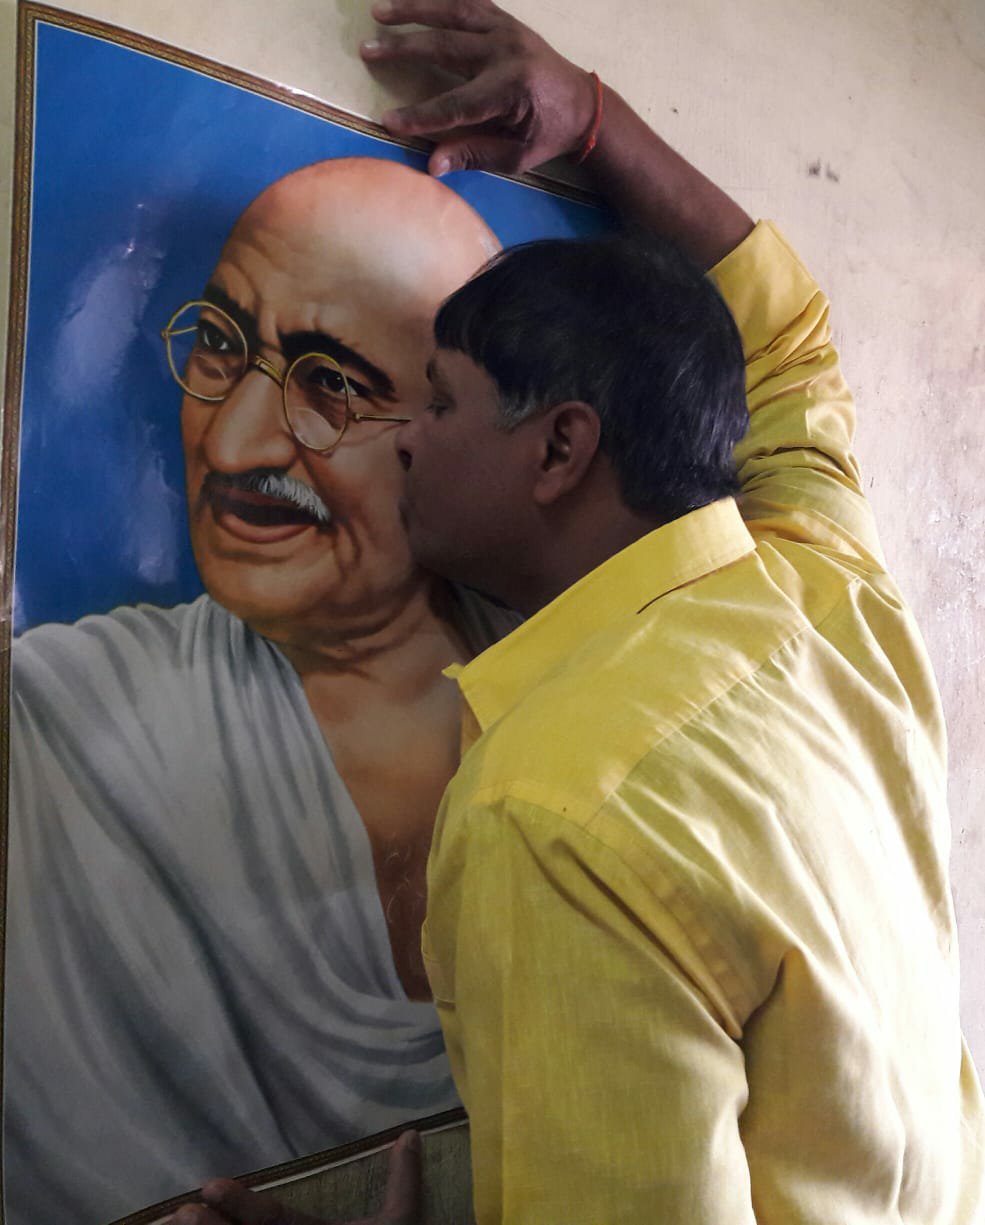 'आई लव यू बापू' तस्वीर चूमते विजय शंकर यादव ने कहा तुम नफरत फैलाओ हम प्यार फैलाएंगे | New India Times